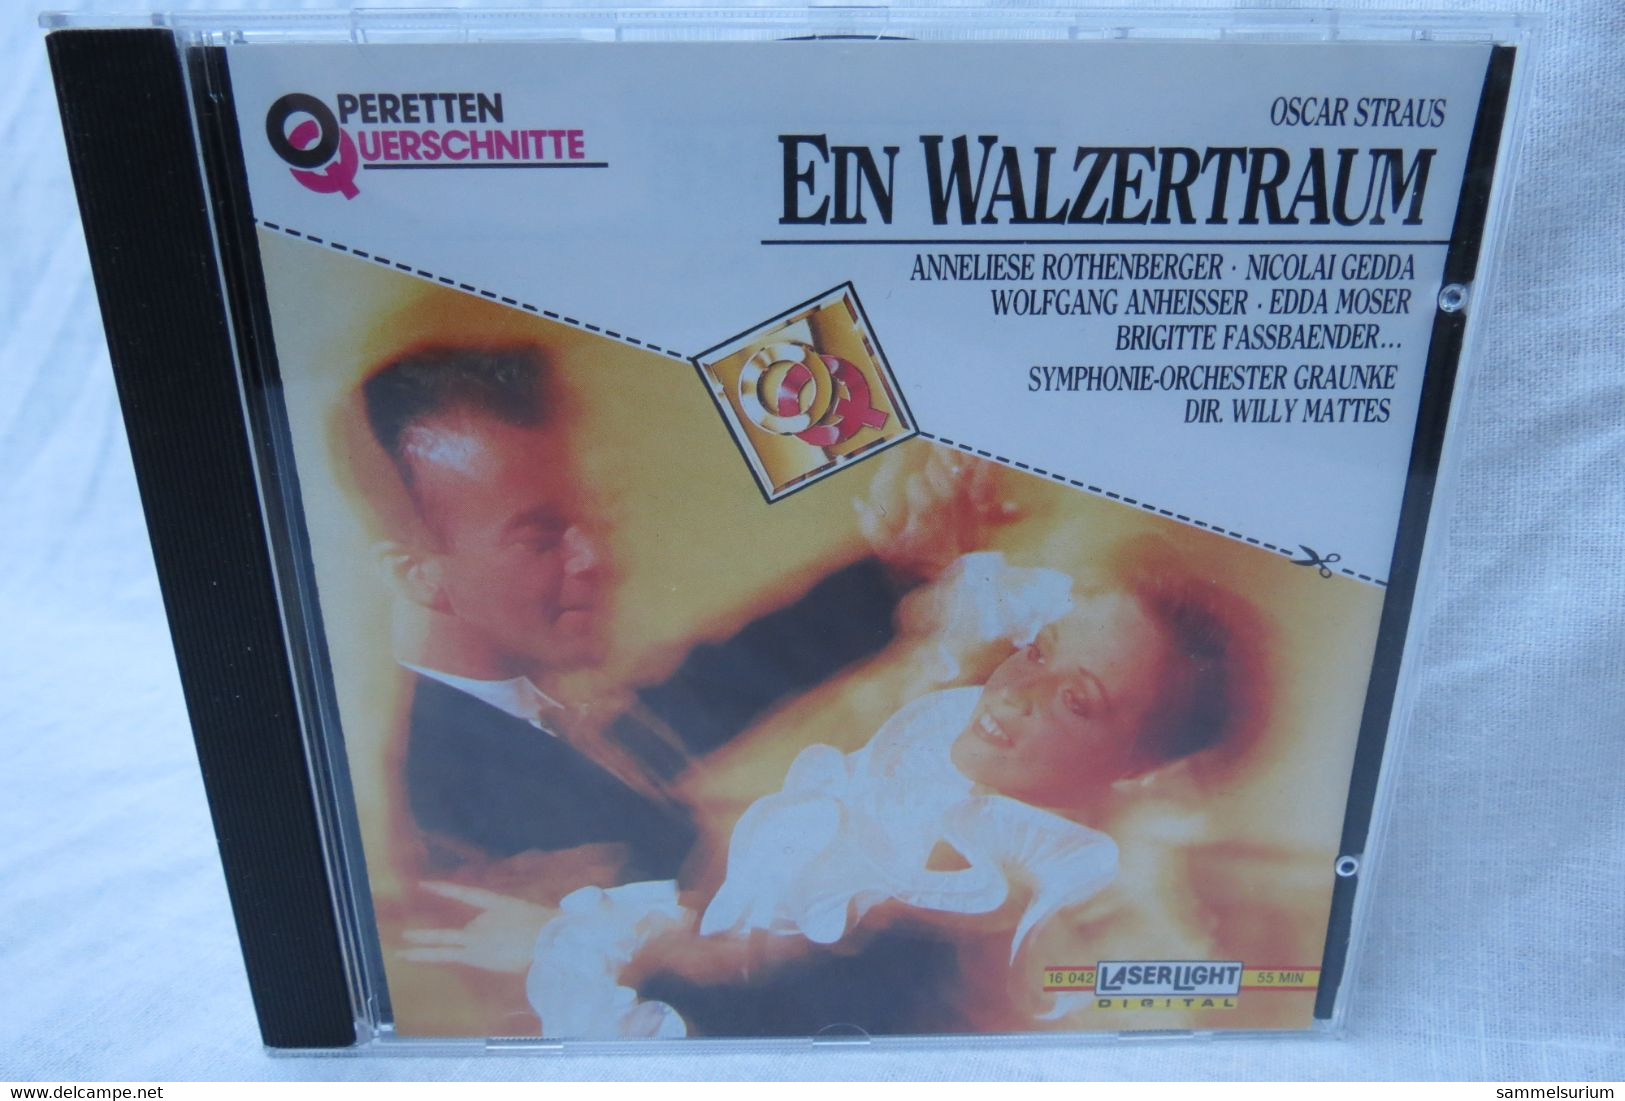 CD "Oscar Straus" Ein Walzertraum Aus Der Reihe Operetten Querschnitte - Oper & Operette